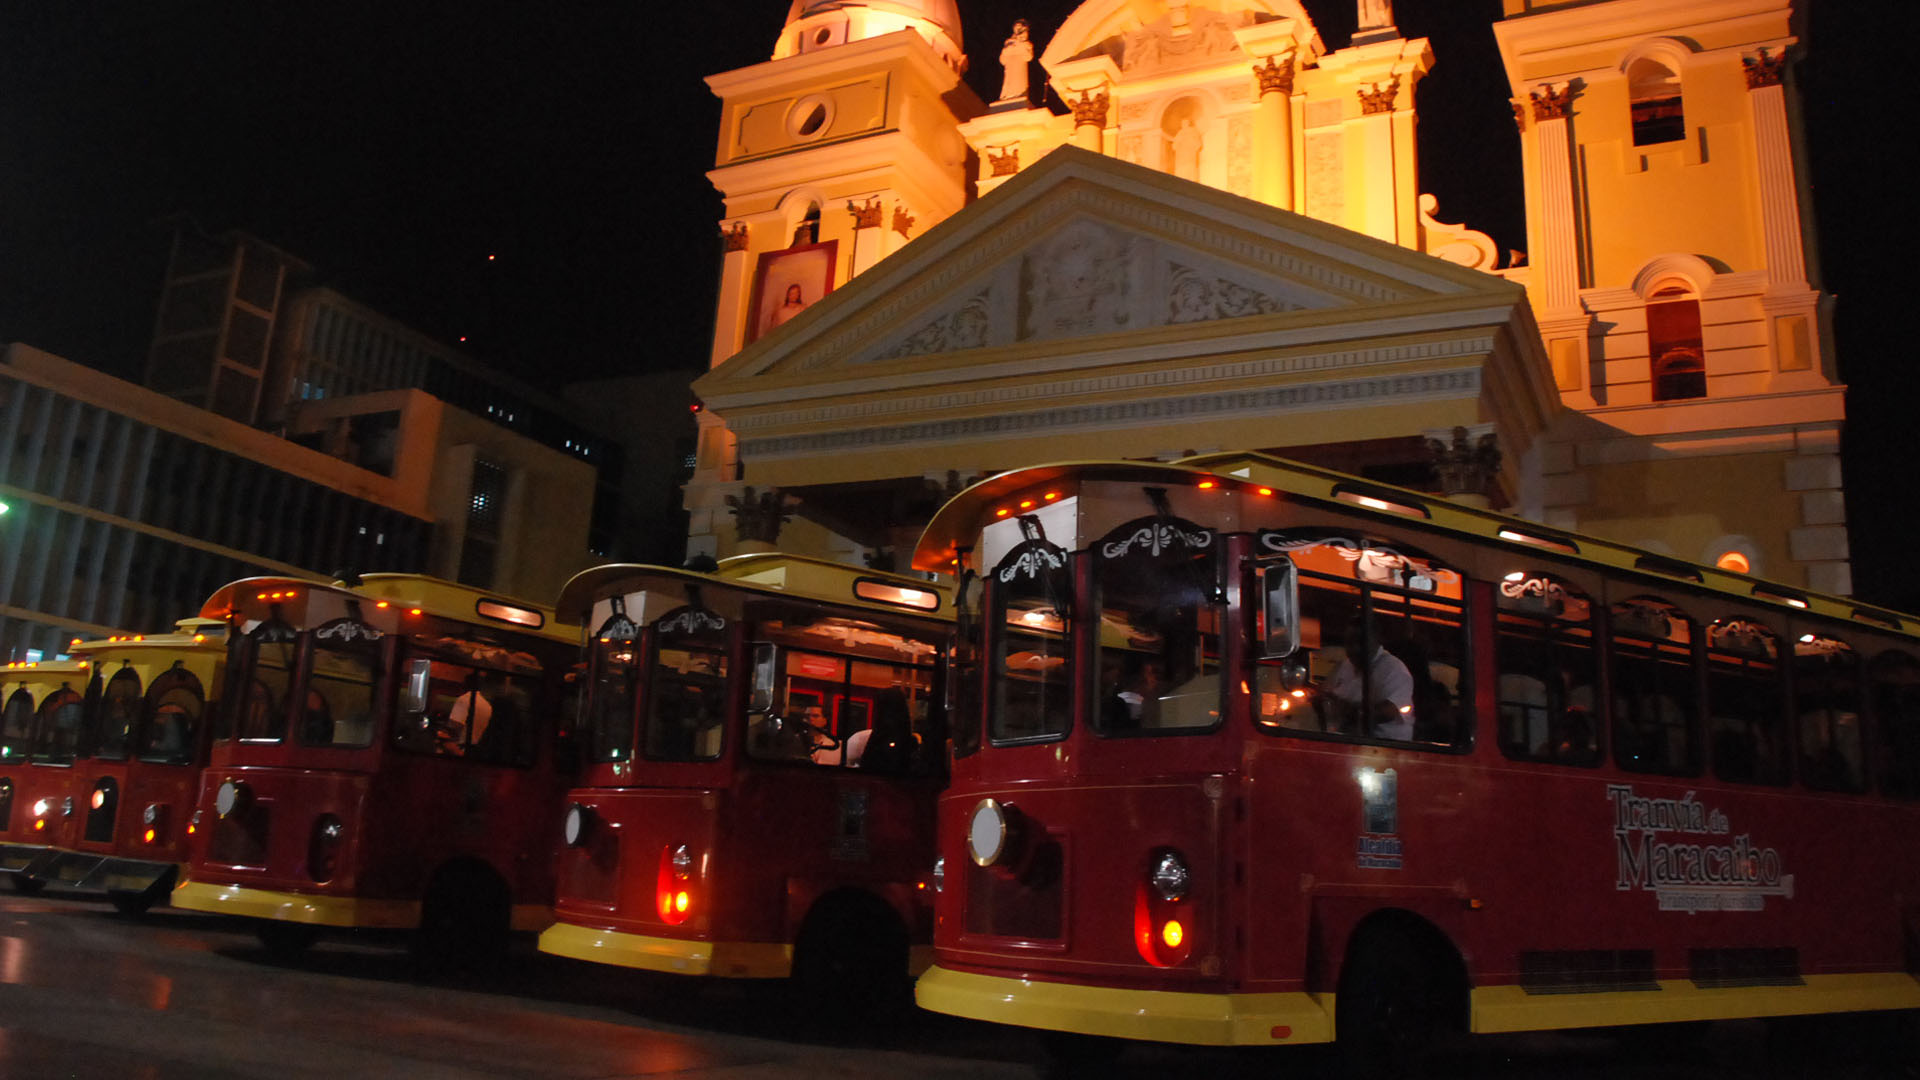 El Tranvía de Maracaibo ha optimizado sus capacidades para recibir a más visitantes